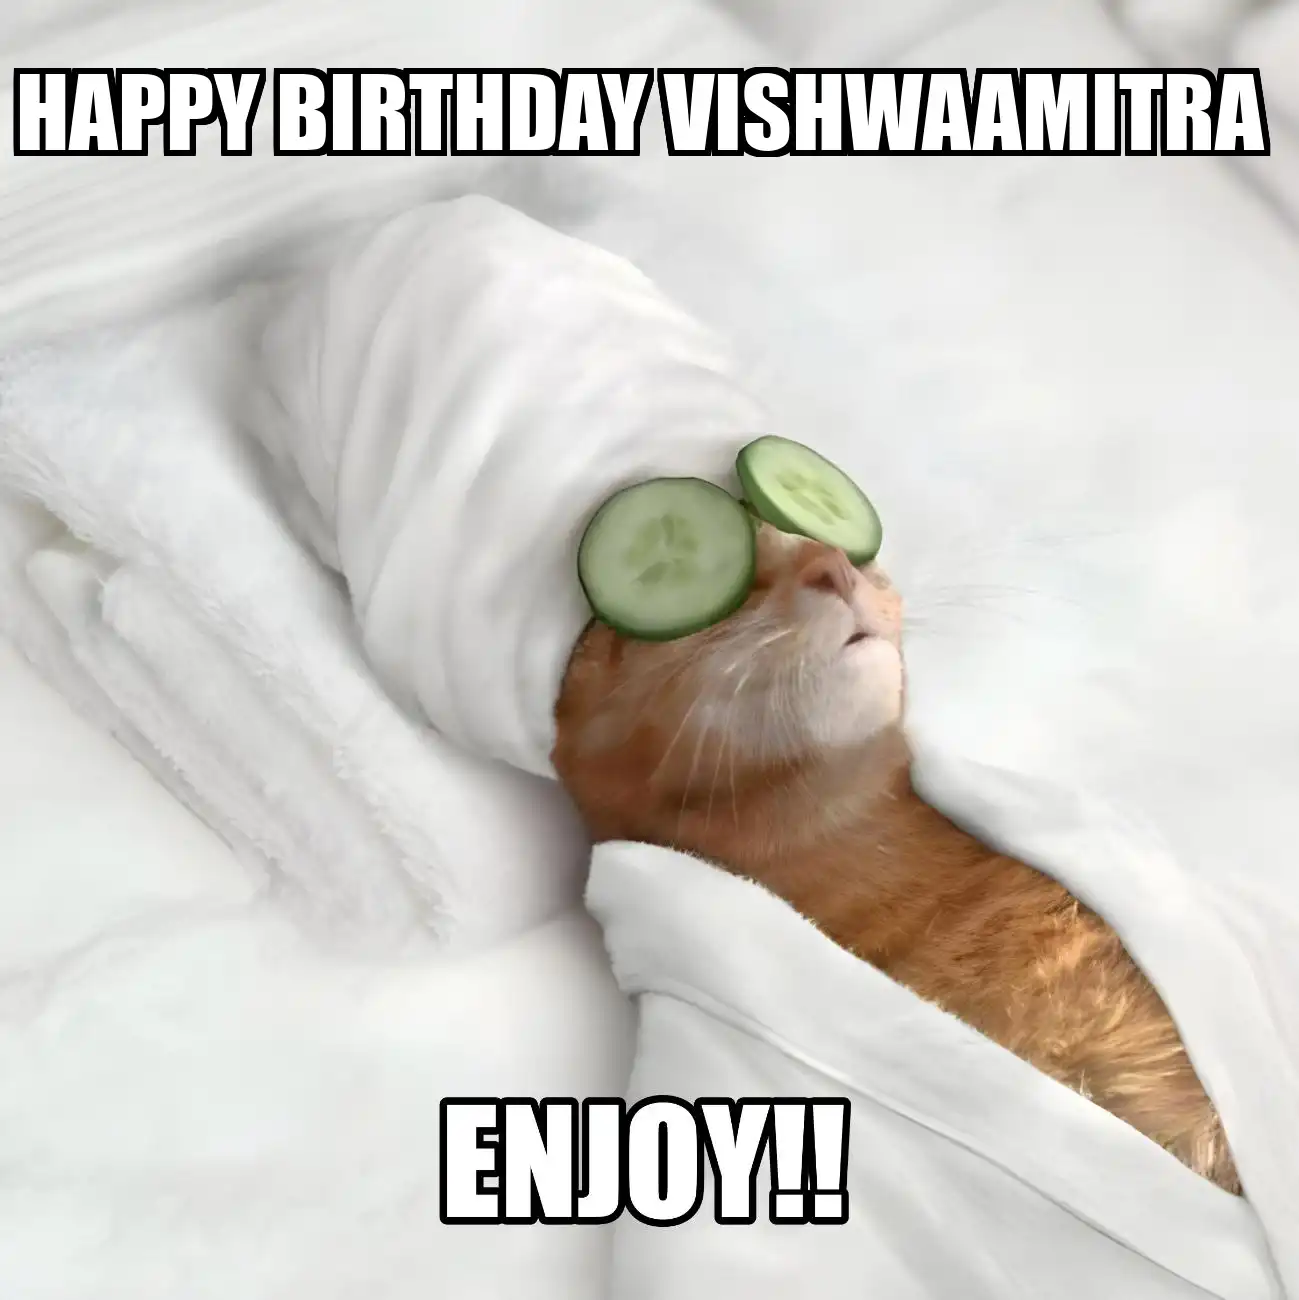 Happy Birthday Vishwaamitra Enjoy Cat Meme